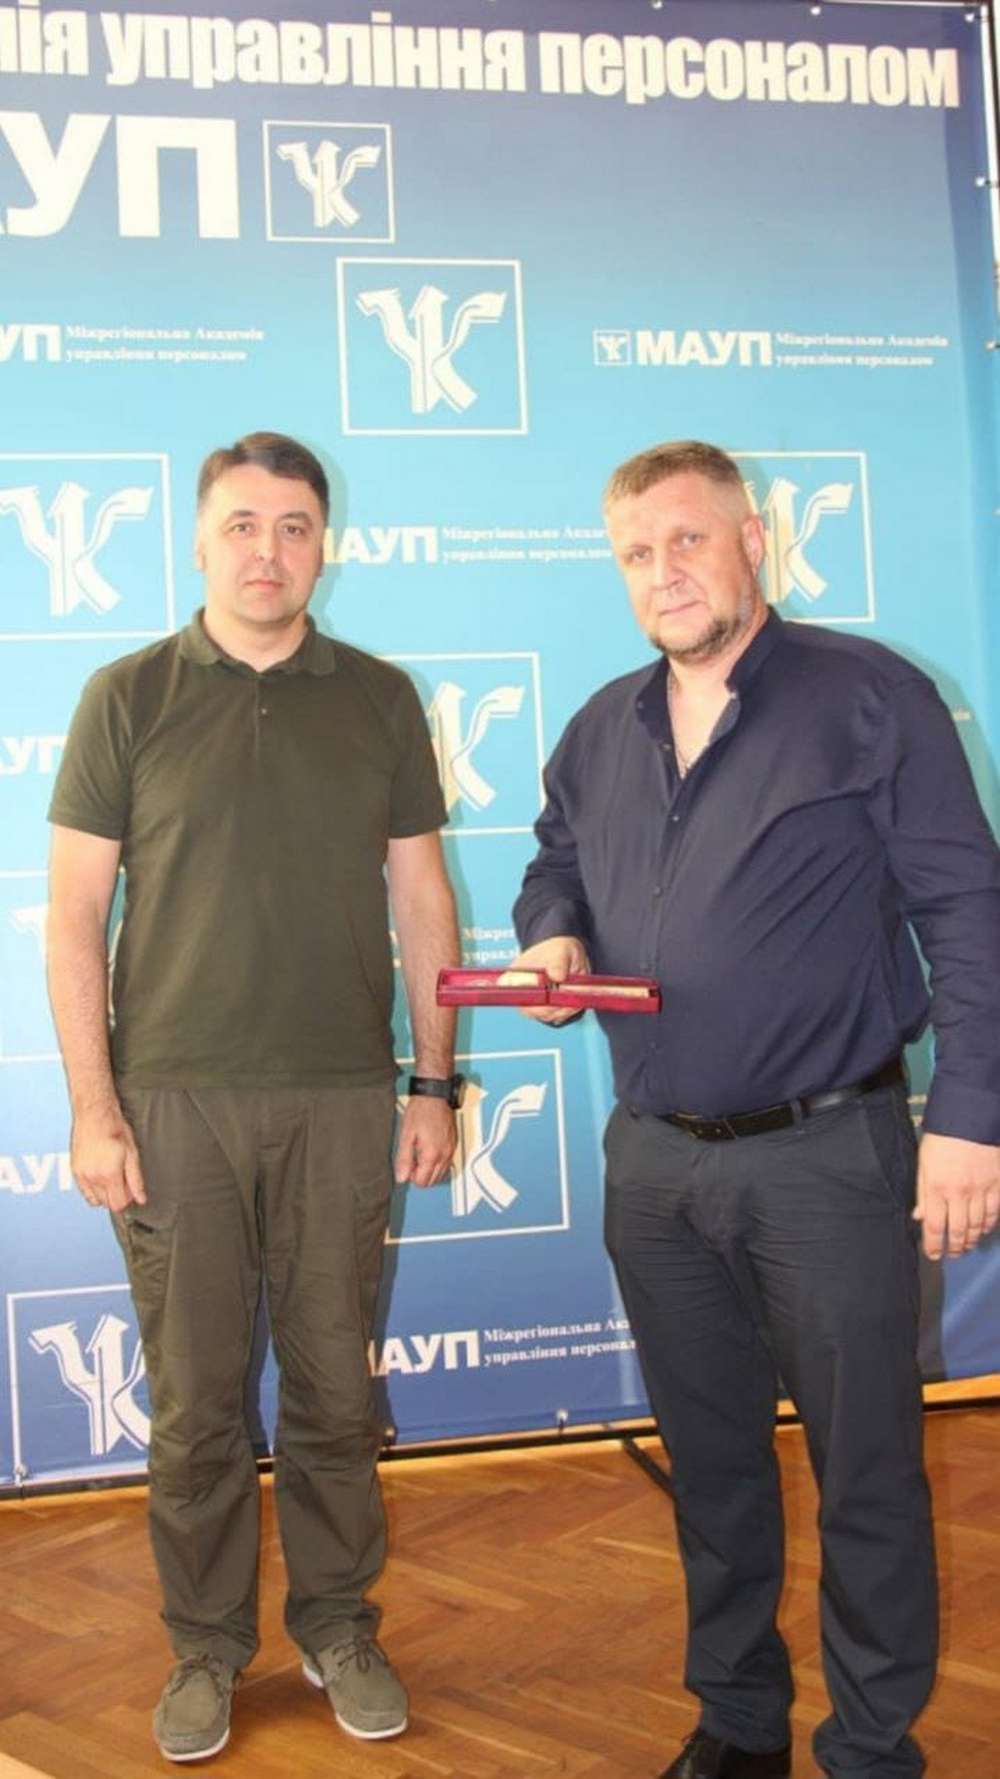 Нікопольця нагородили медаллю «За сприяння обороні»